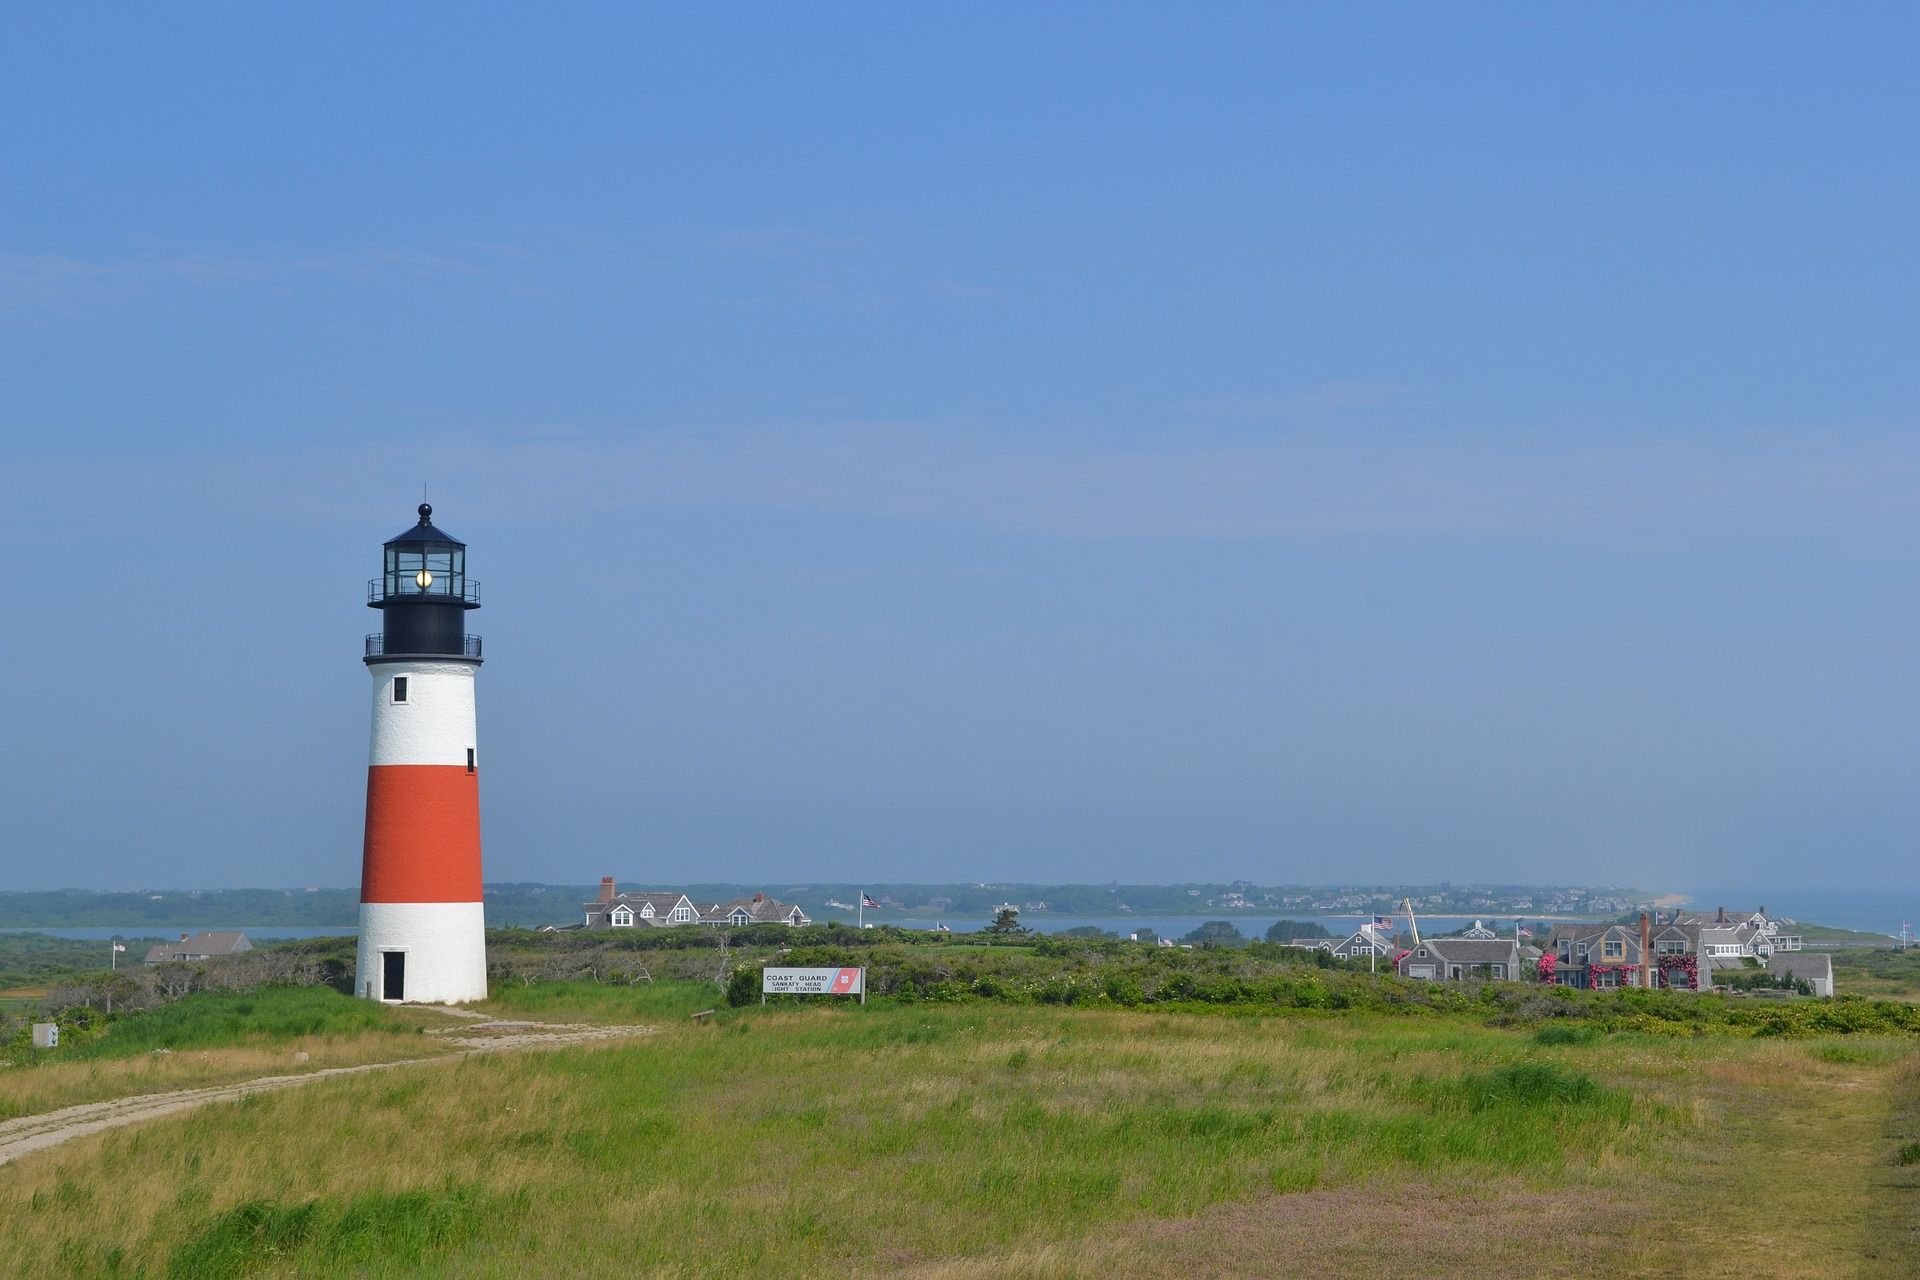 Nantucket lighthouse in Nantucket Island